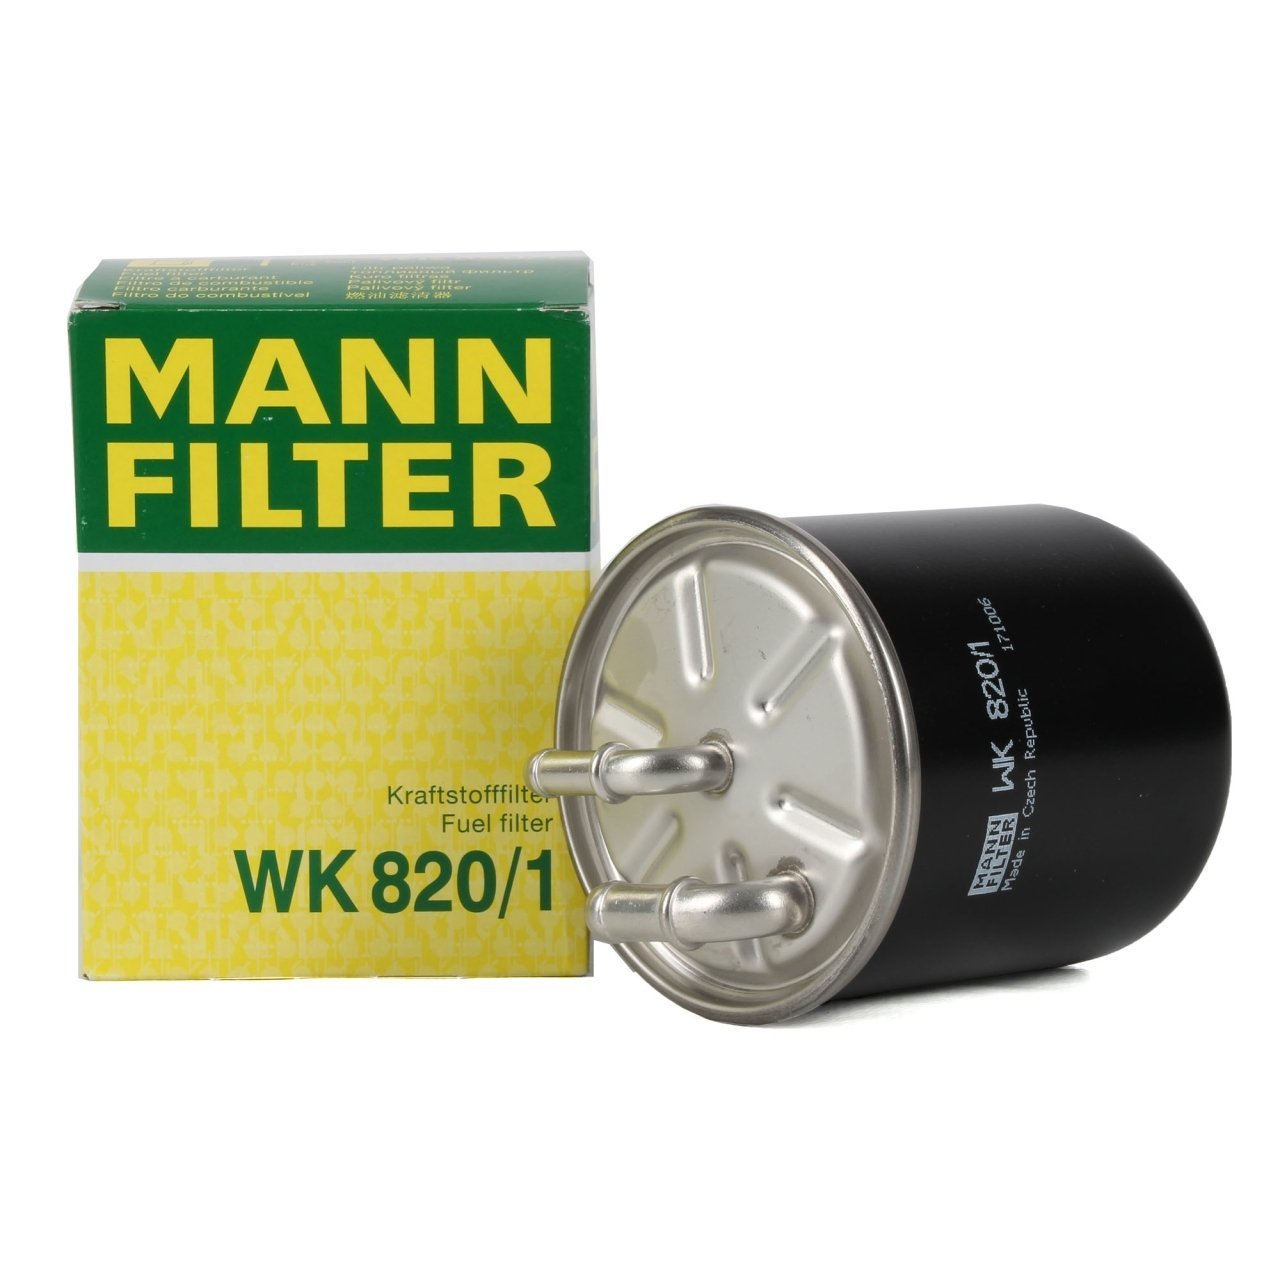 MANN WK820-1 | Mercedes W203 Kasa C220 CDI Mazot Filtresi